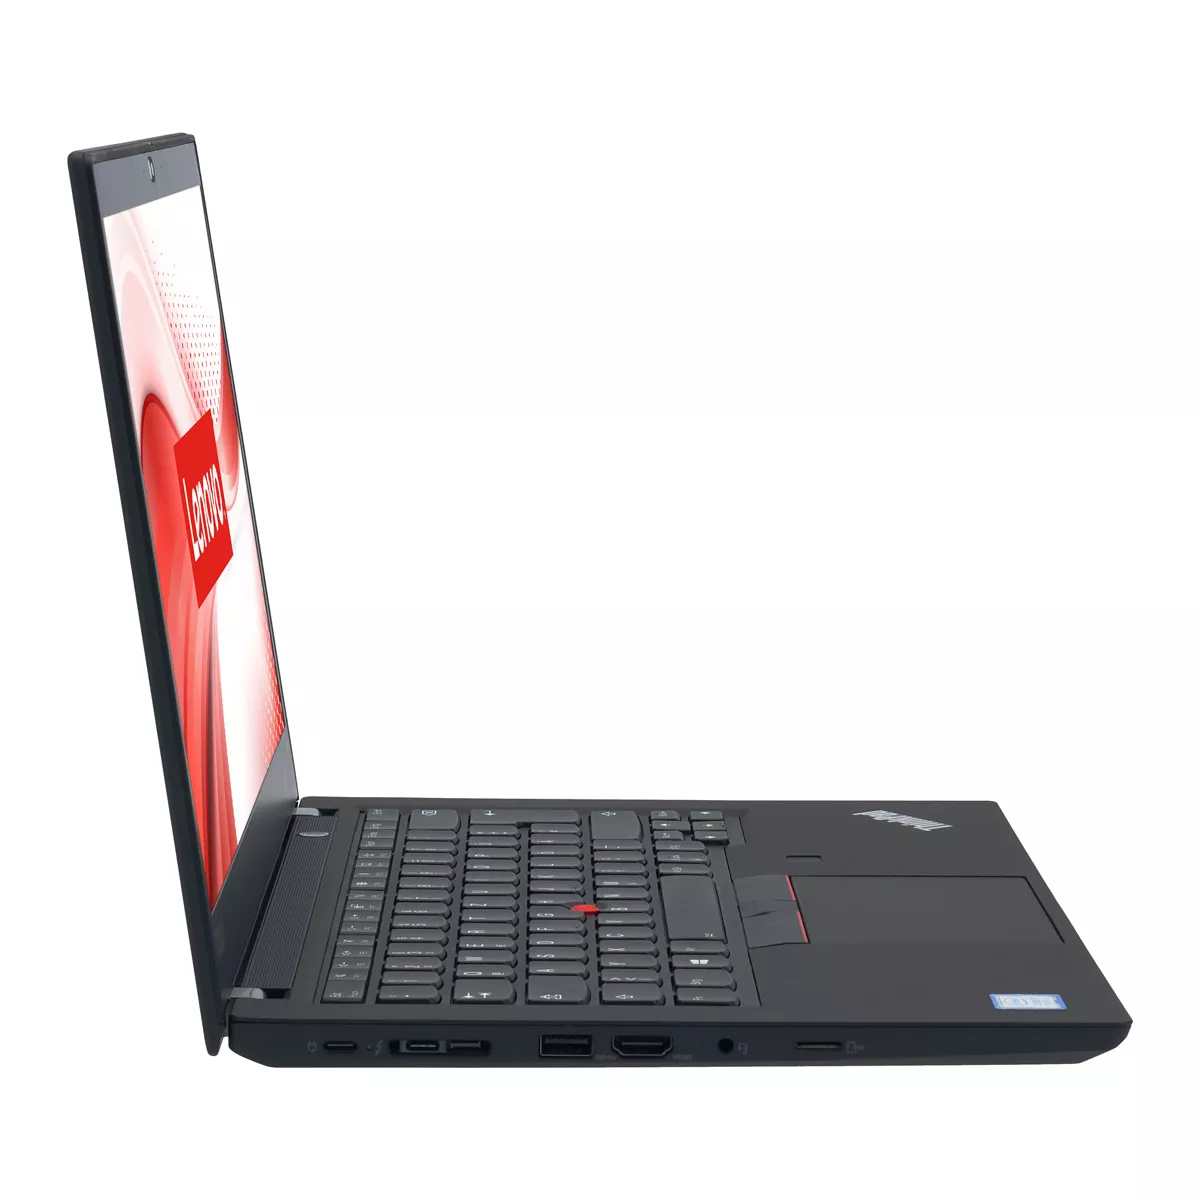 Lenovo ThinkPad T490 Core i7 8665U 16 GB 500 GB M.2 nVME SSD Webcam Touch B